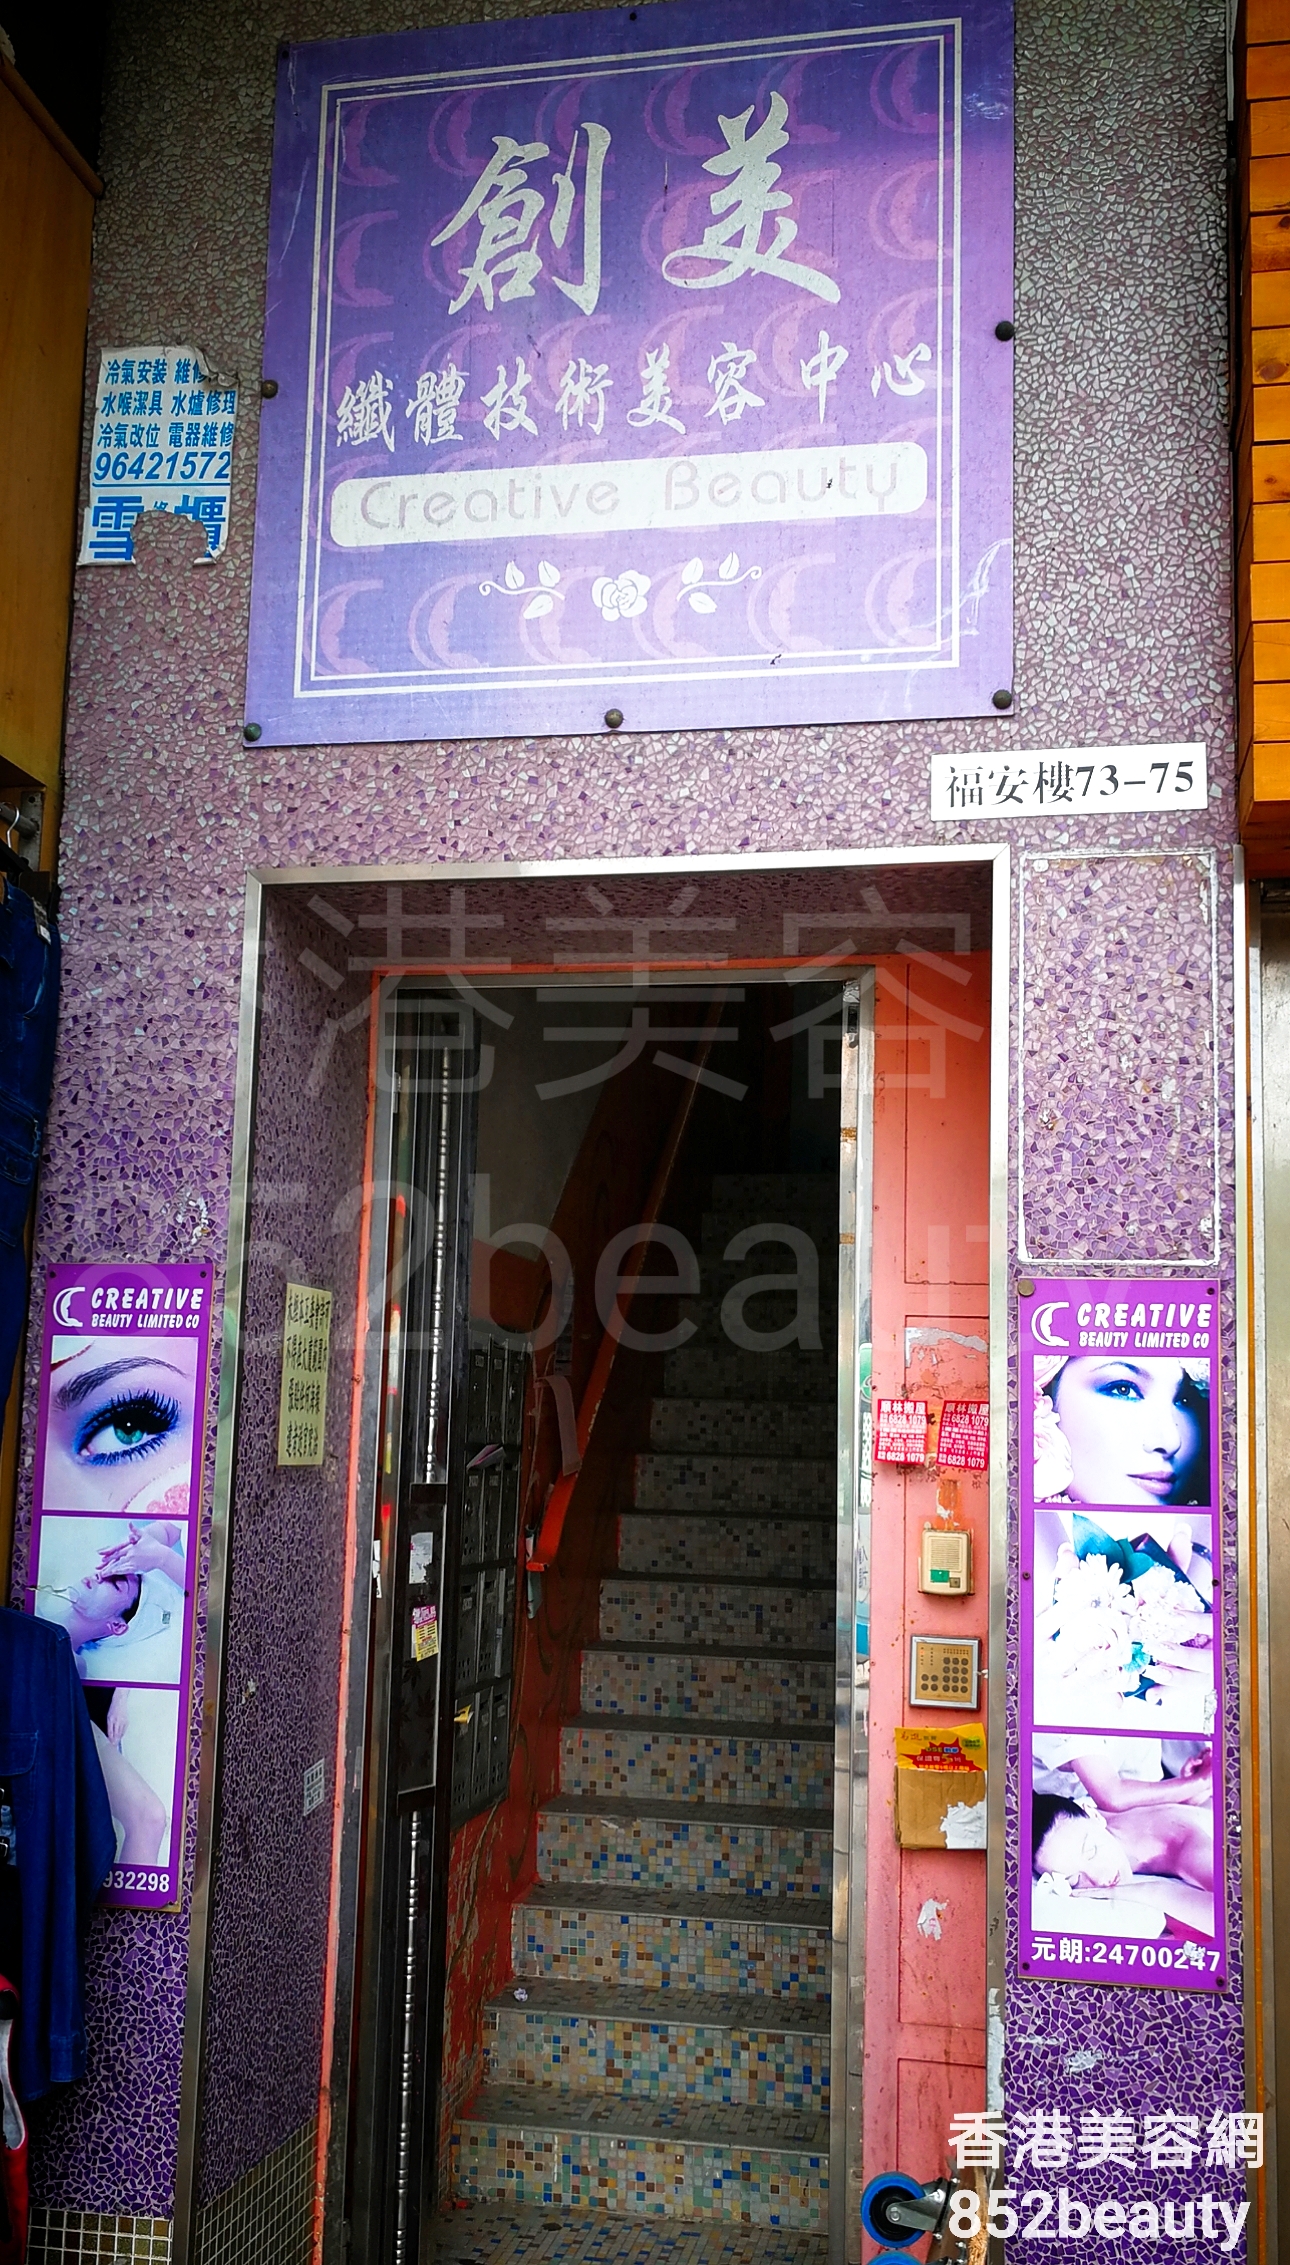 香港美容網 Hong Kong Beauty Salon 美容院 / 美容師: 創美 纖體技術美容中心